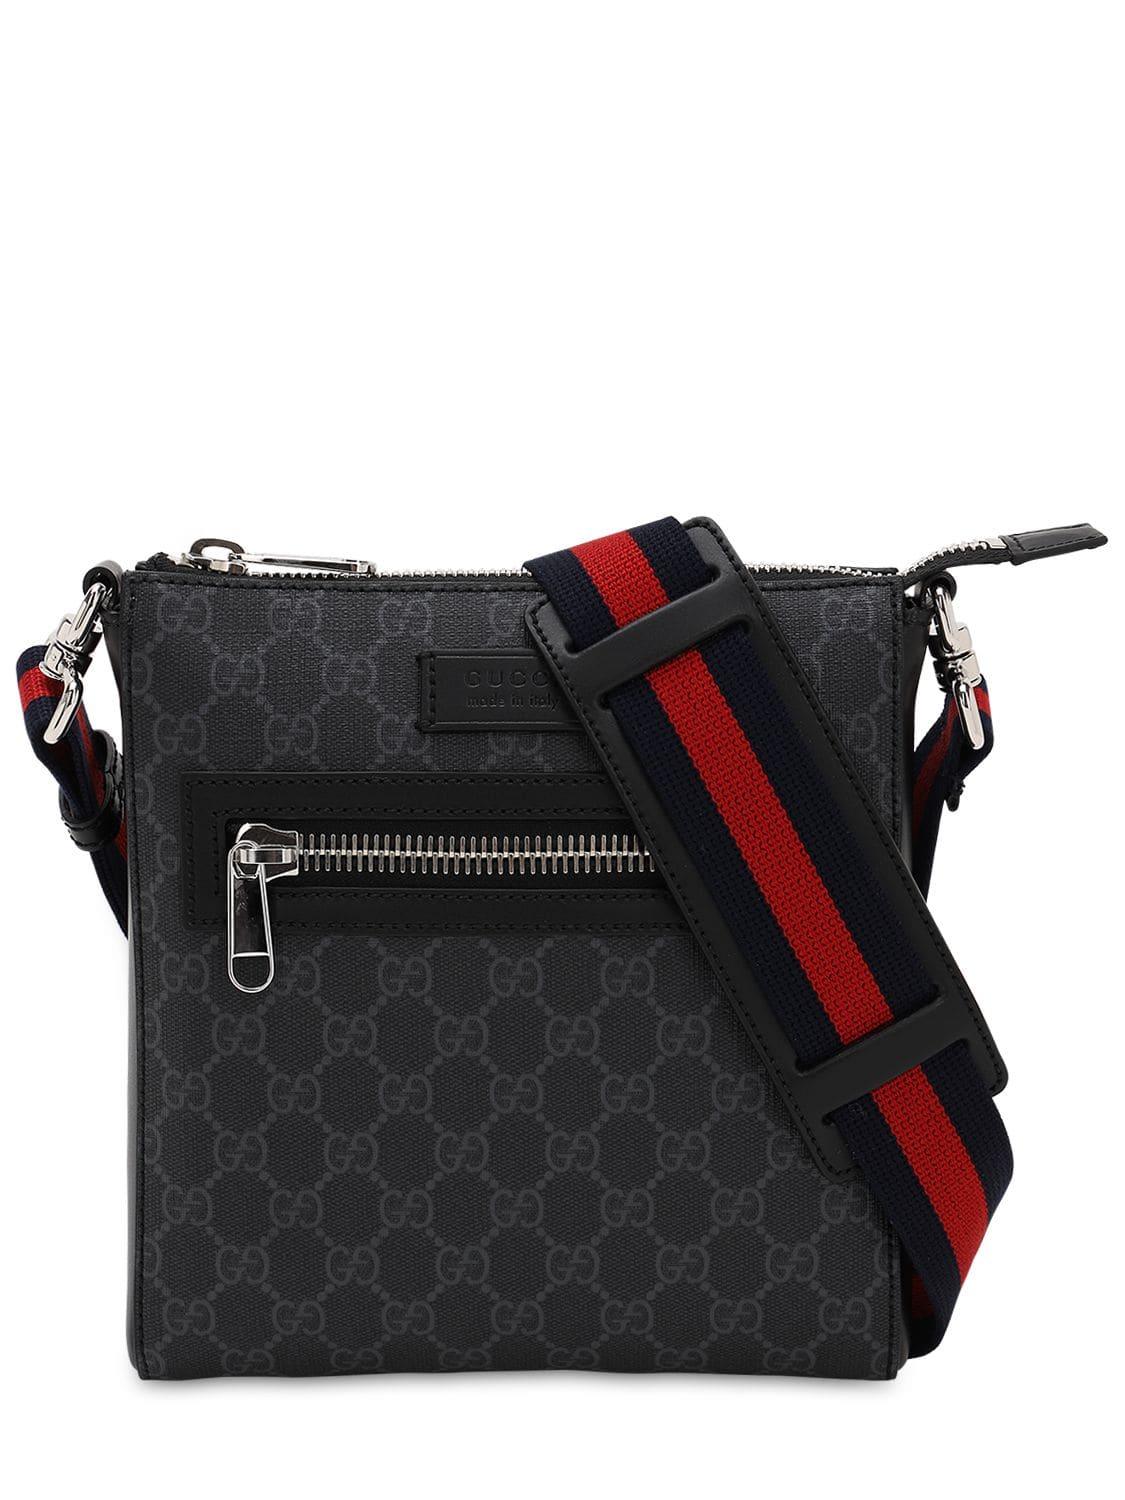 Gucci Gg Supreme Messenger Bag in Black for Men - Lyst